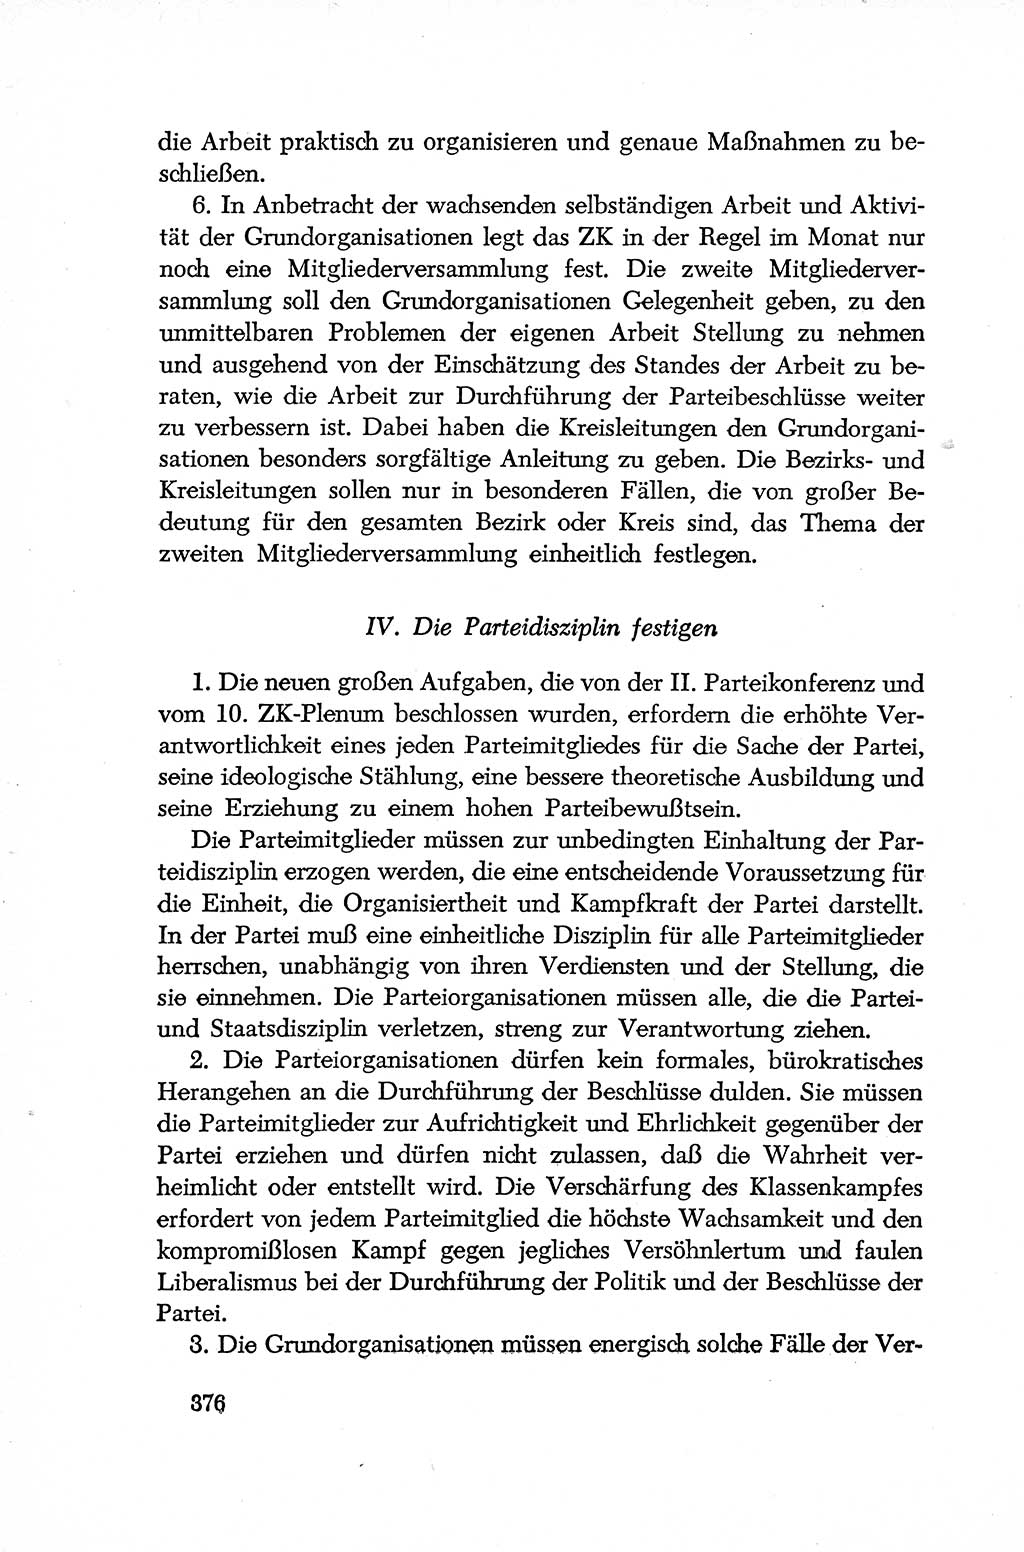 Dokumente der Sozialistischen Einheitspartei Deutschlands (SED) [Deutsche Demokratische Republik (DDR)] 1952-1953, Seite 376 (Dok. SED DDR 1952-1953, S. 376)